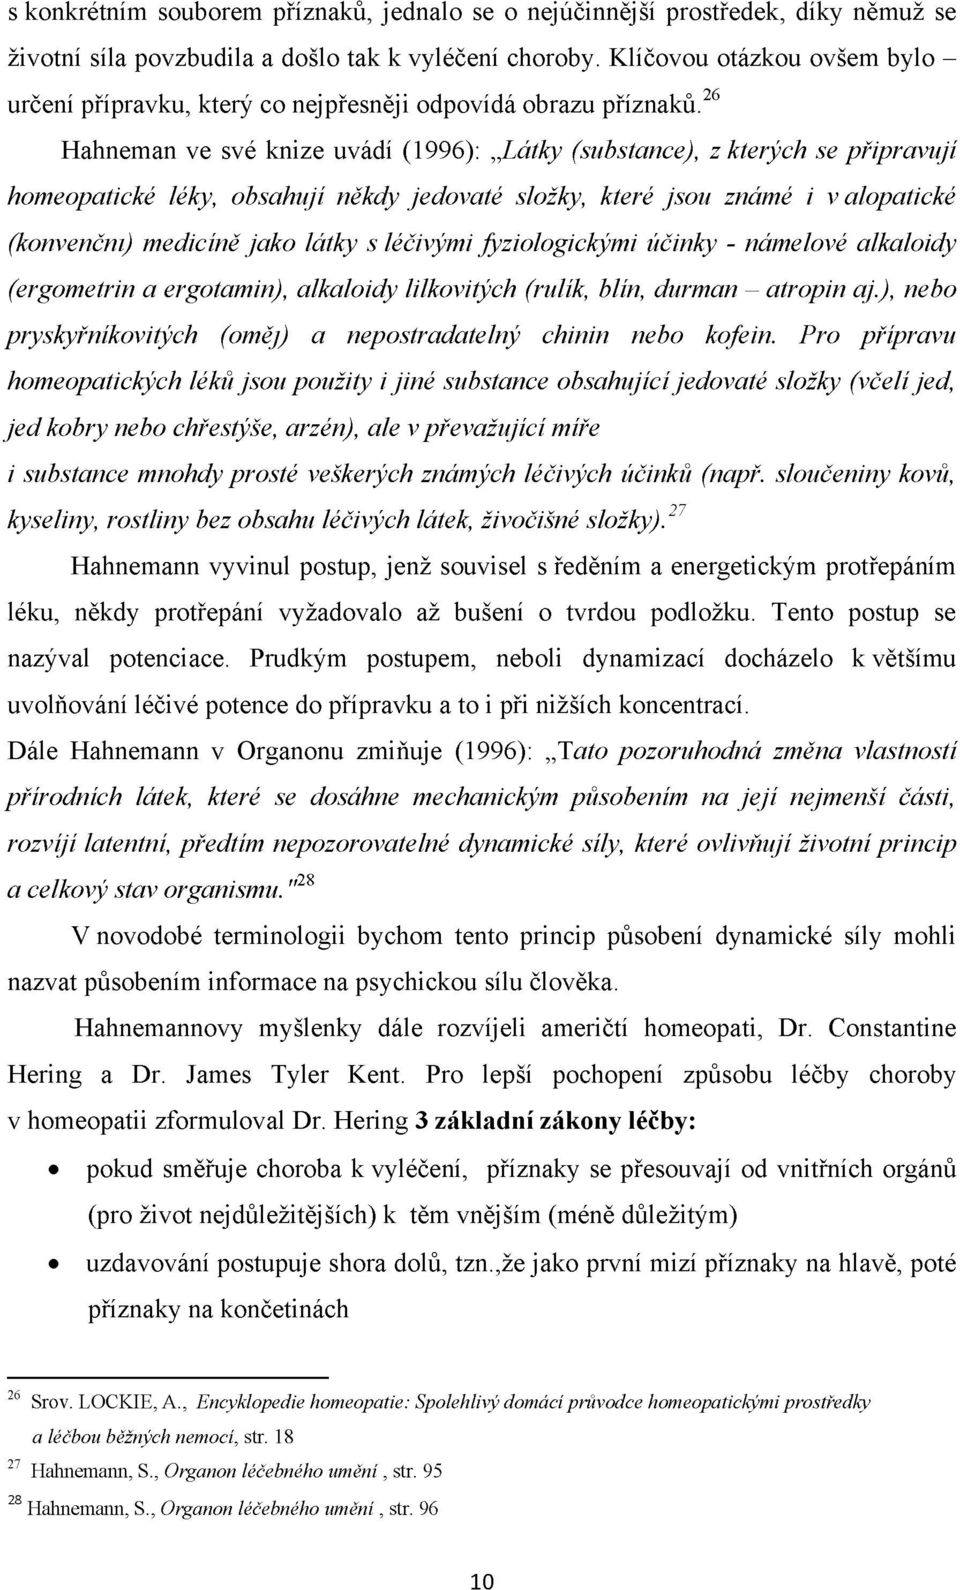 26 Hahneman ve své knize uvádí (1996): Látky (substance), z kterých se připravují homeopatické léky, obsahují někdy jedovaté složky, které jsou známé i v alopatické (konvenčni) medicíně jako látky s